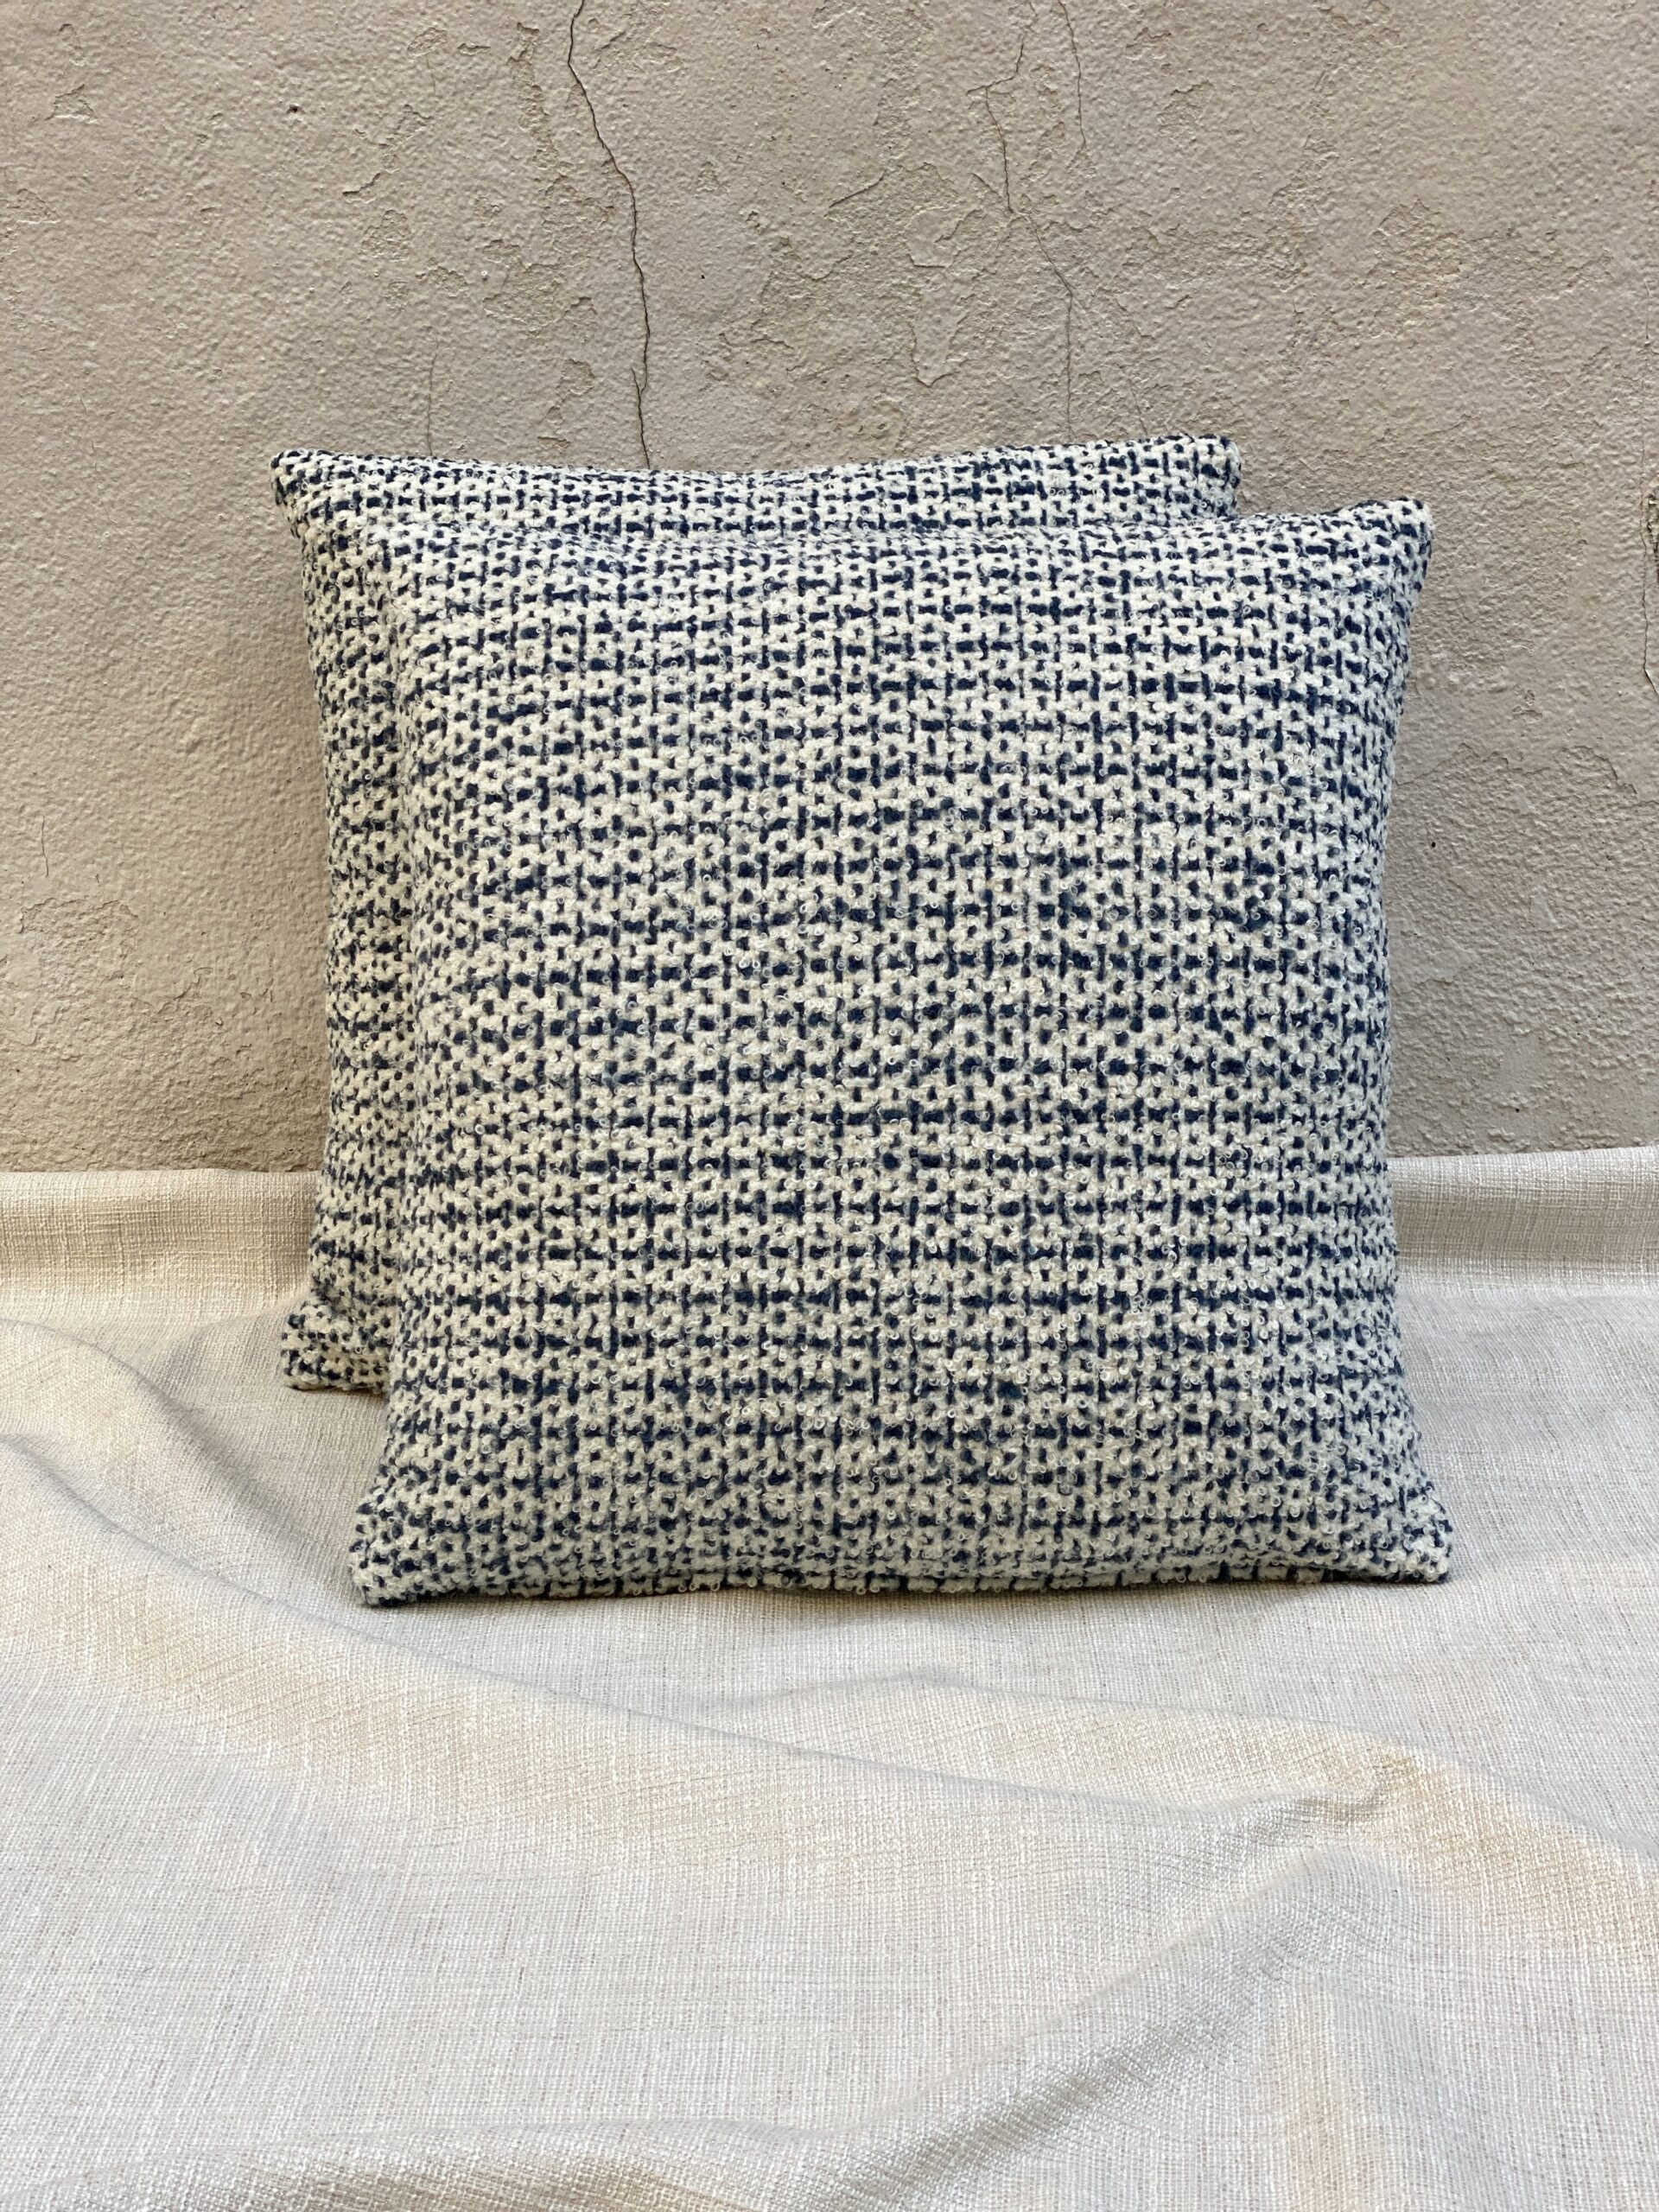 Foam Fabric Pillows